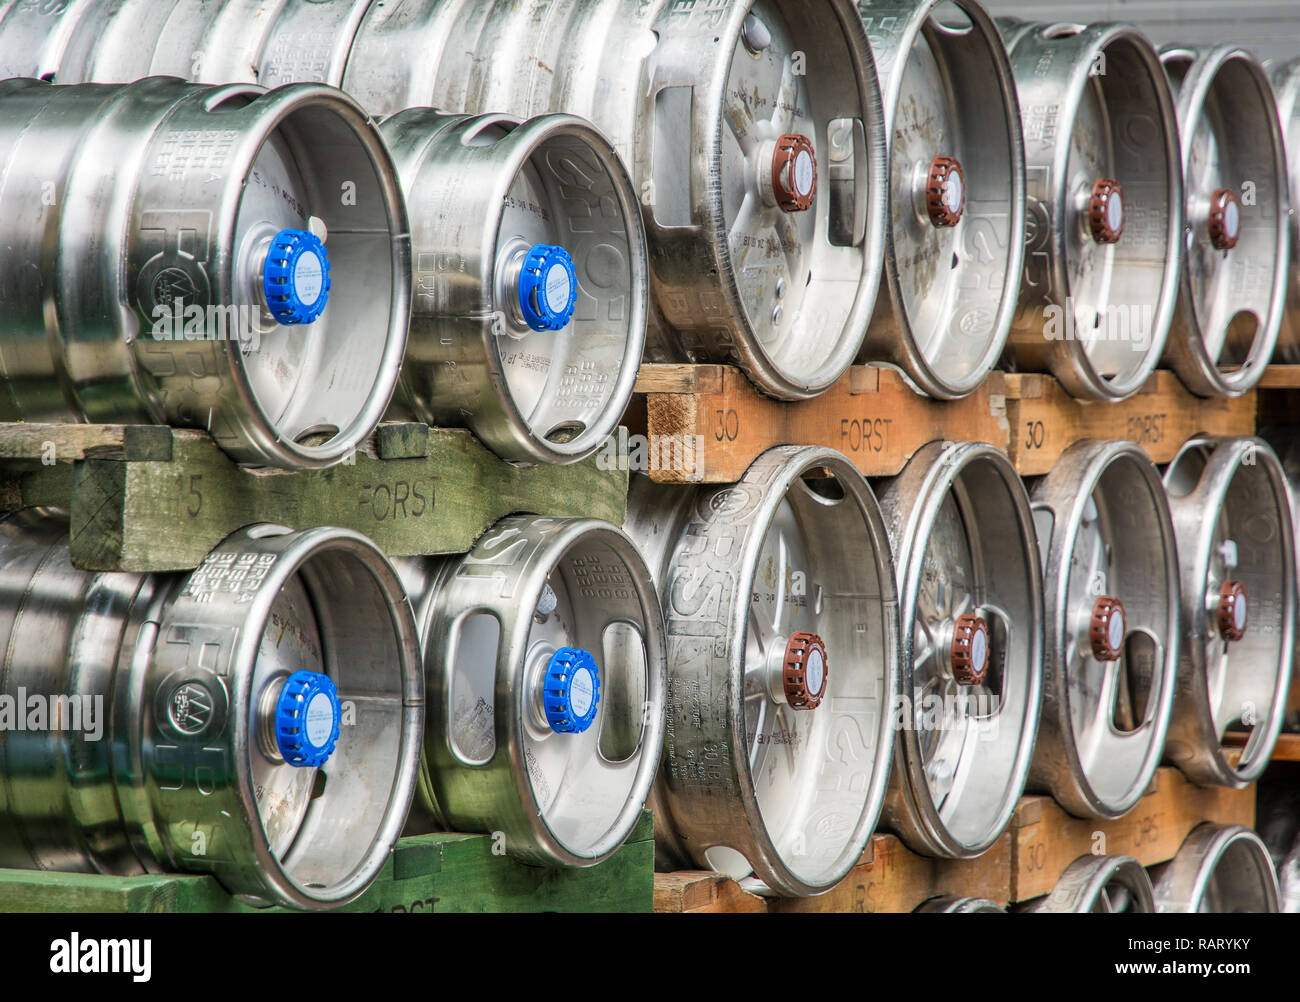 Bierfässer. Der Forst Brauerei, 1857 gegründet, ist als eine der größten Brauereien in ganz Italien bekannt. Algund - Bozen, Südtirol, Italien. Stockfoto